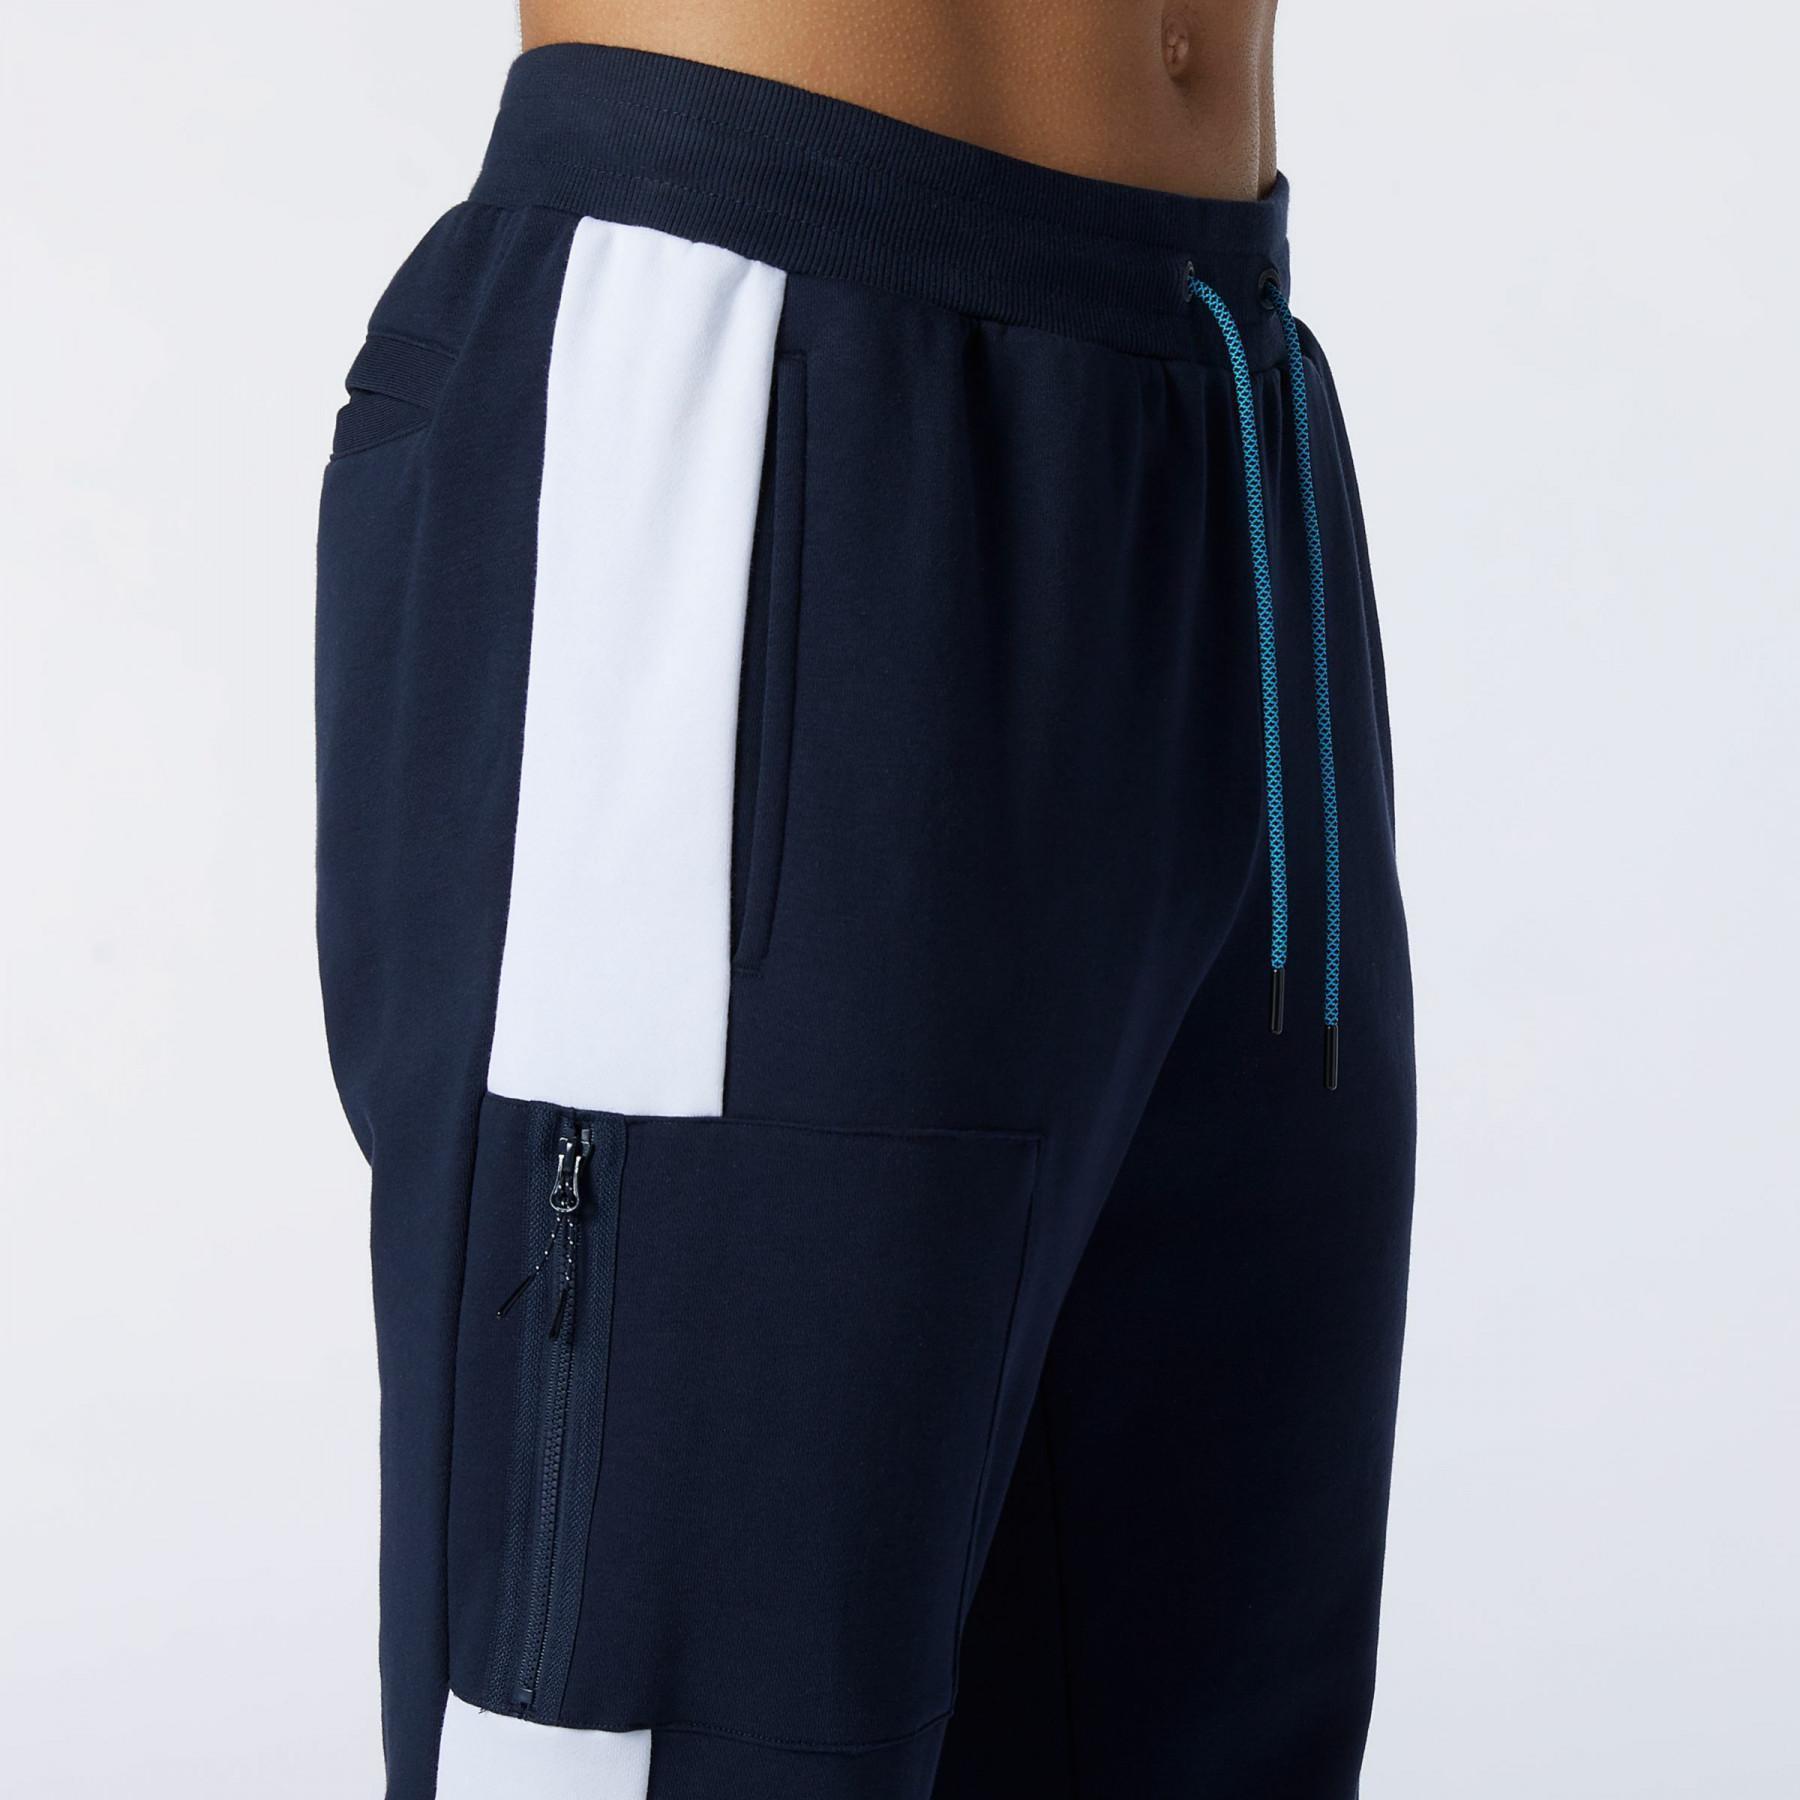 Spodnie New Balance athletics fleece